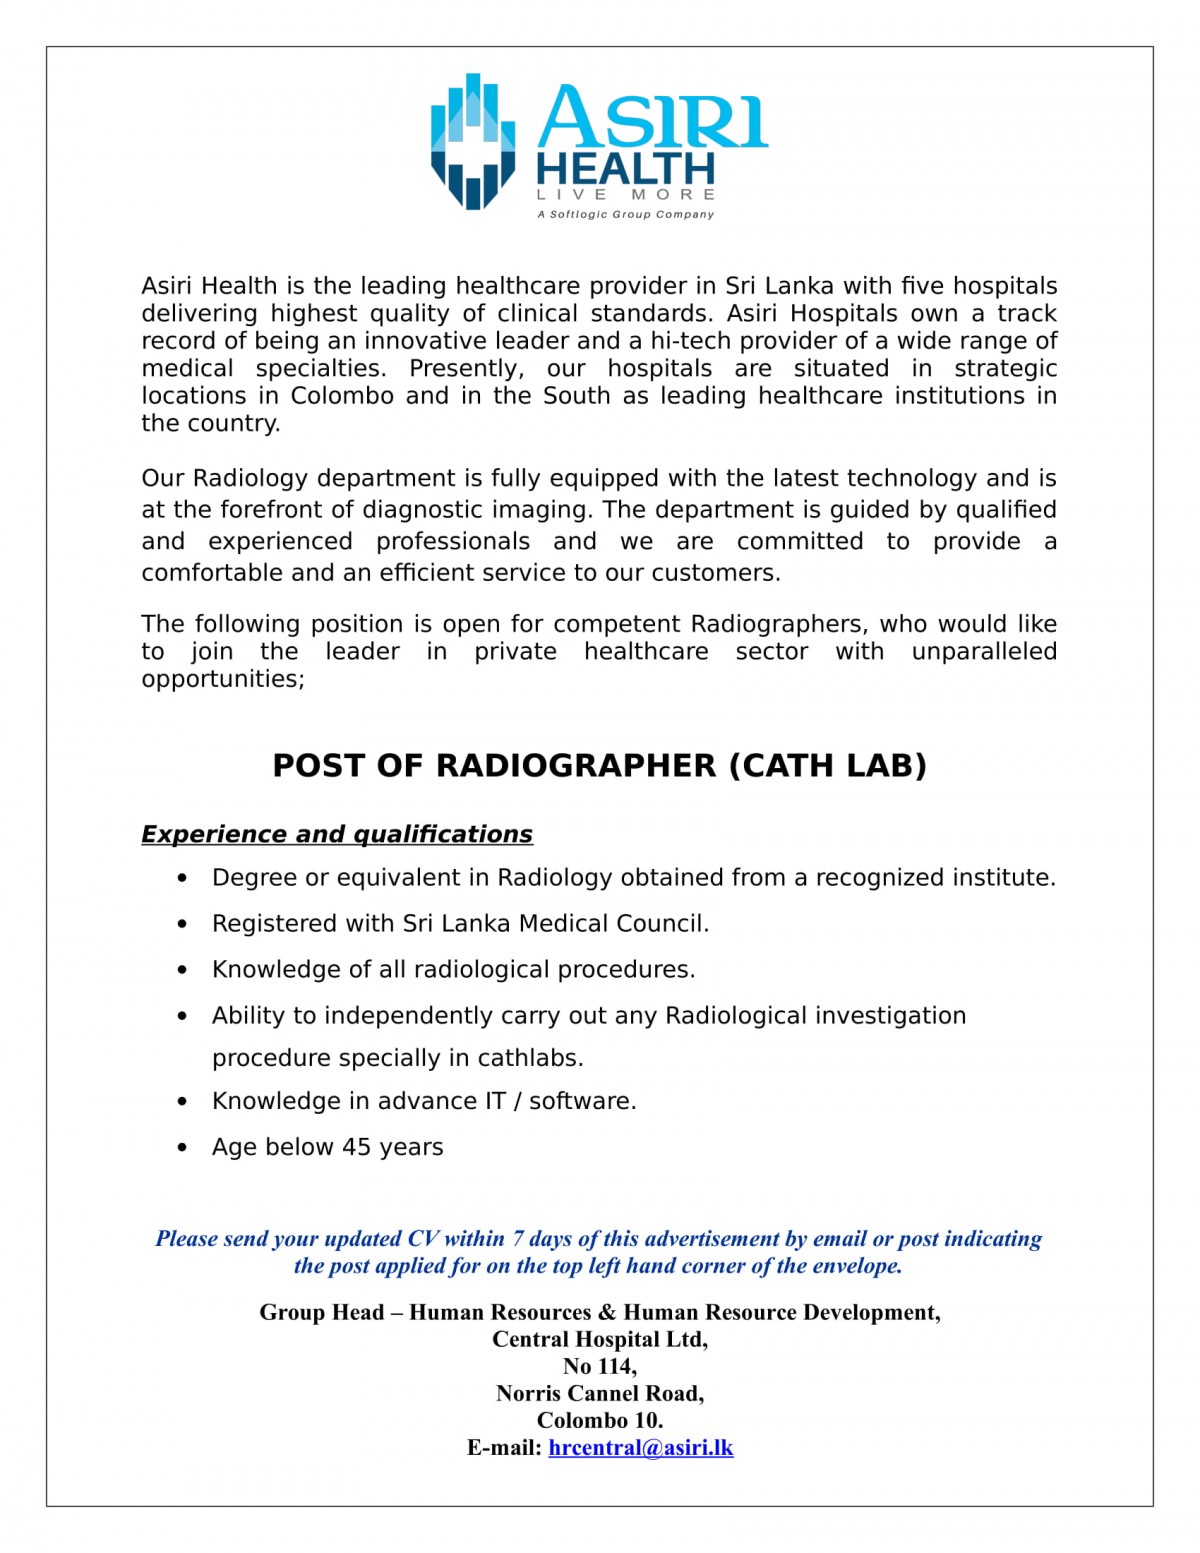 Radiographer Jobs Vacancies - Asiri Hospital Sri Lanka Job Vacancy